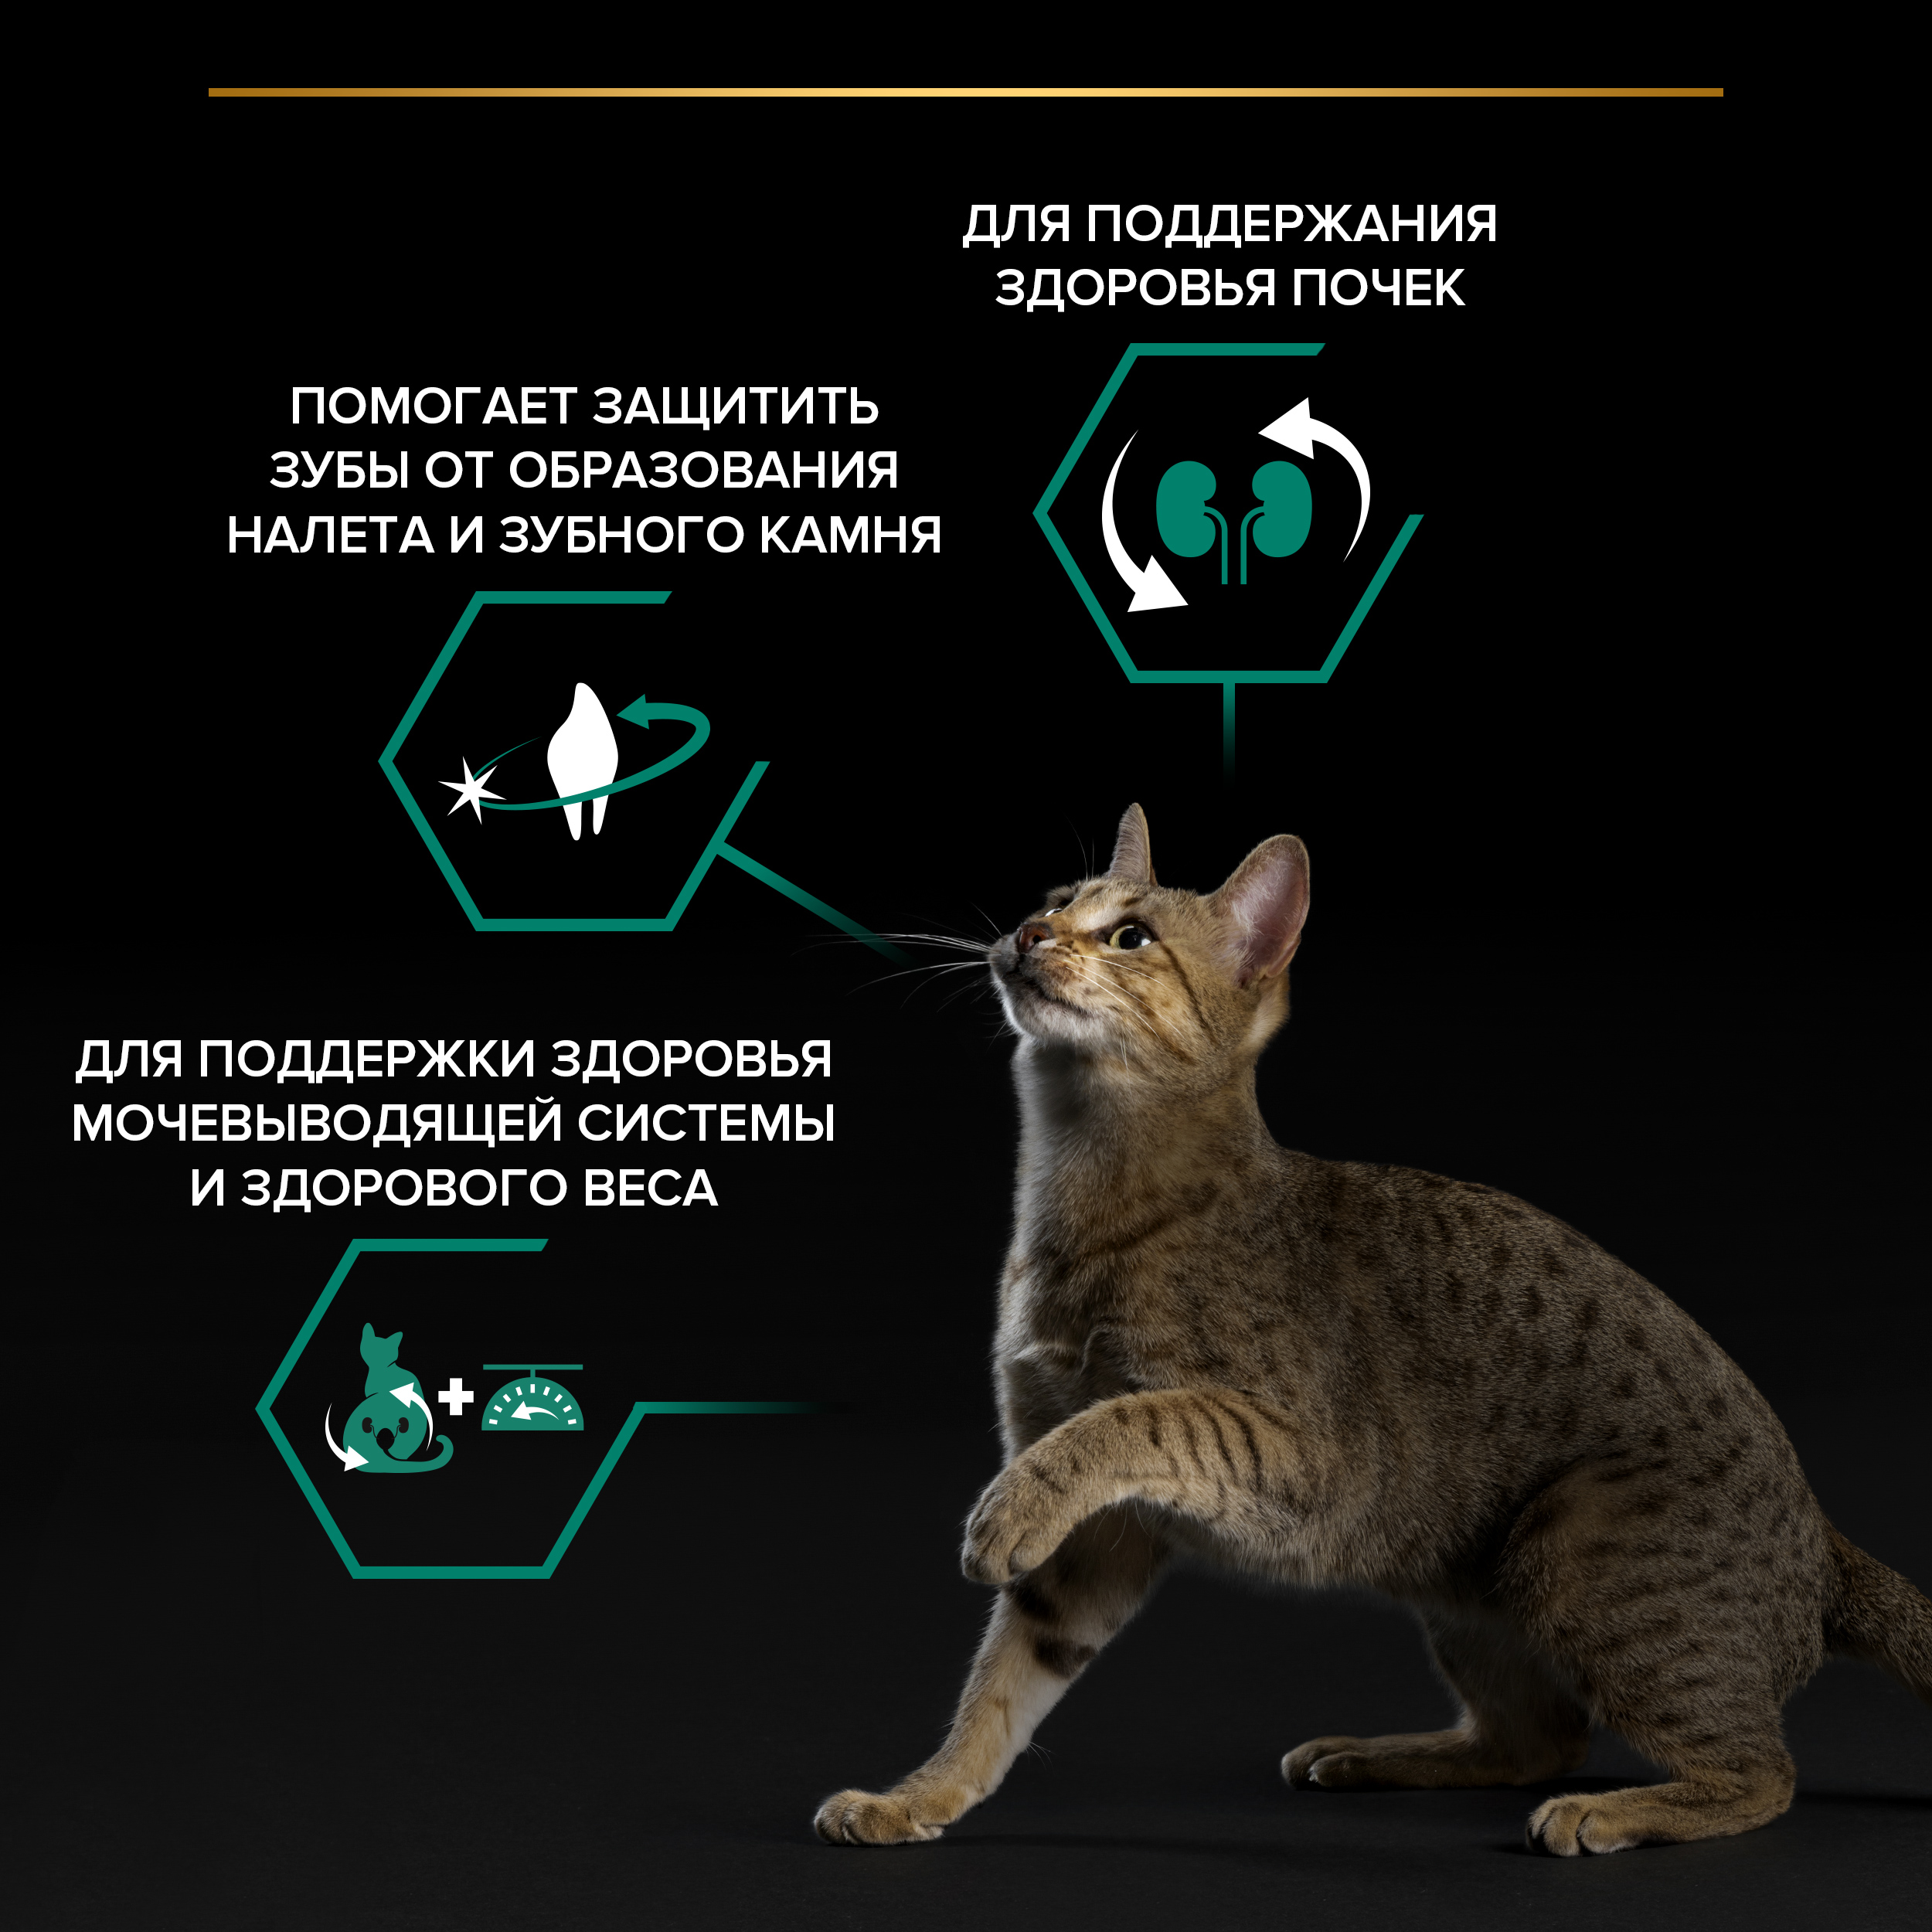 PRO PLAN® Sterilised Adult RENAL PLUS для взрослых стерилизованных кошек, с высоким содержанием индейки